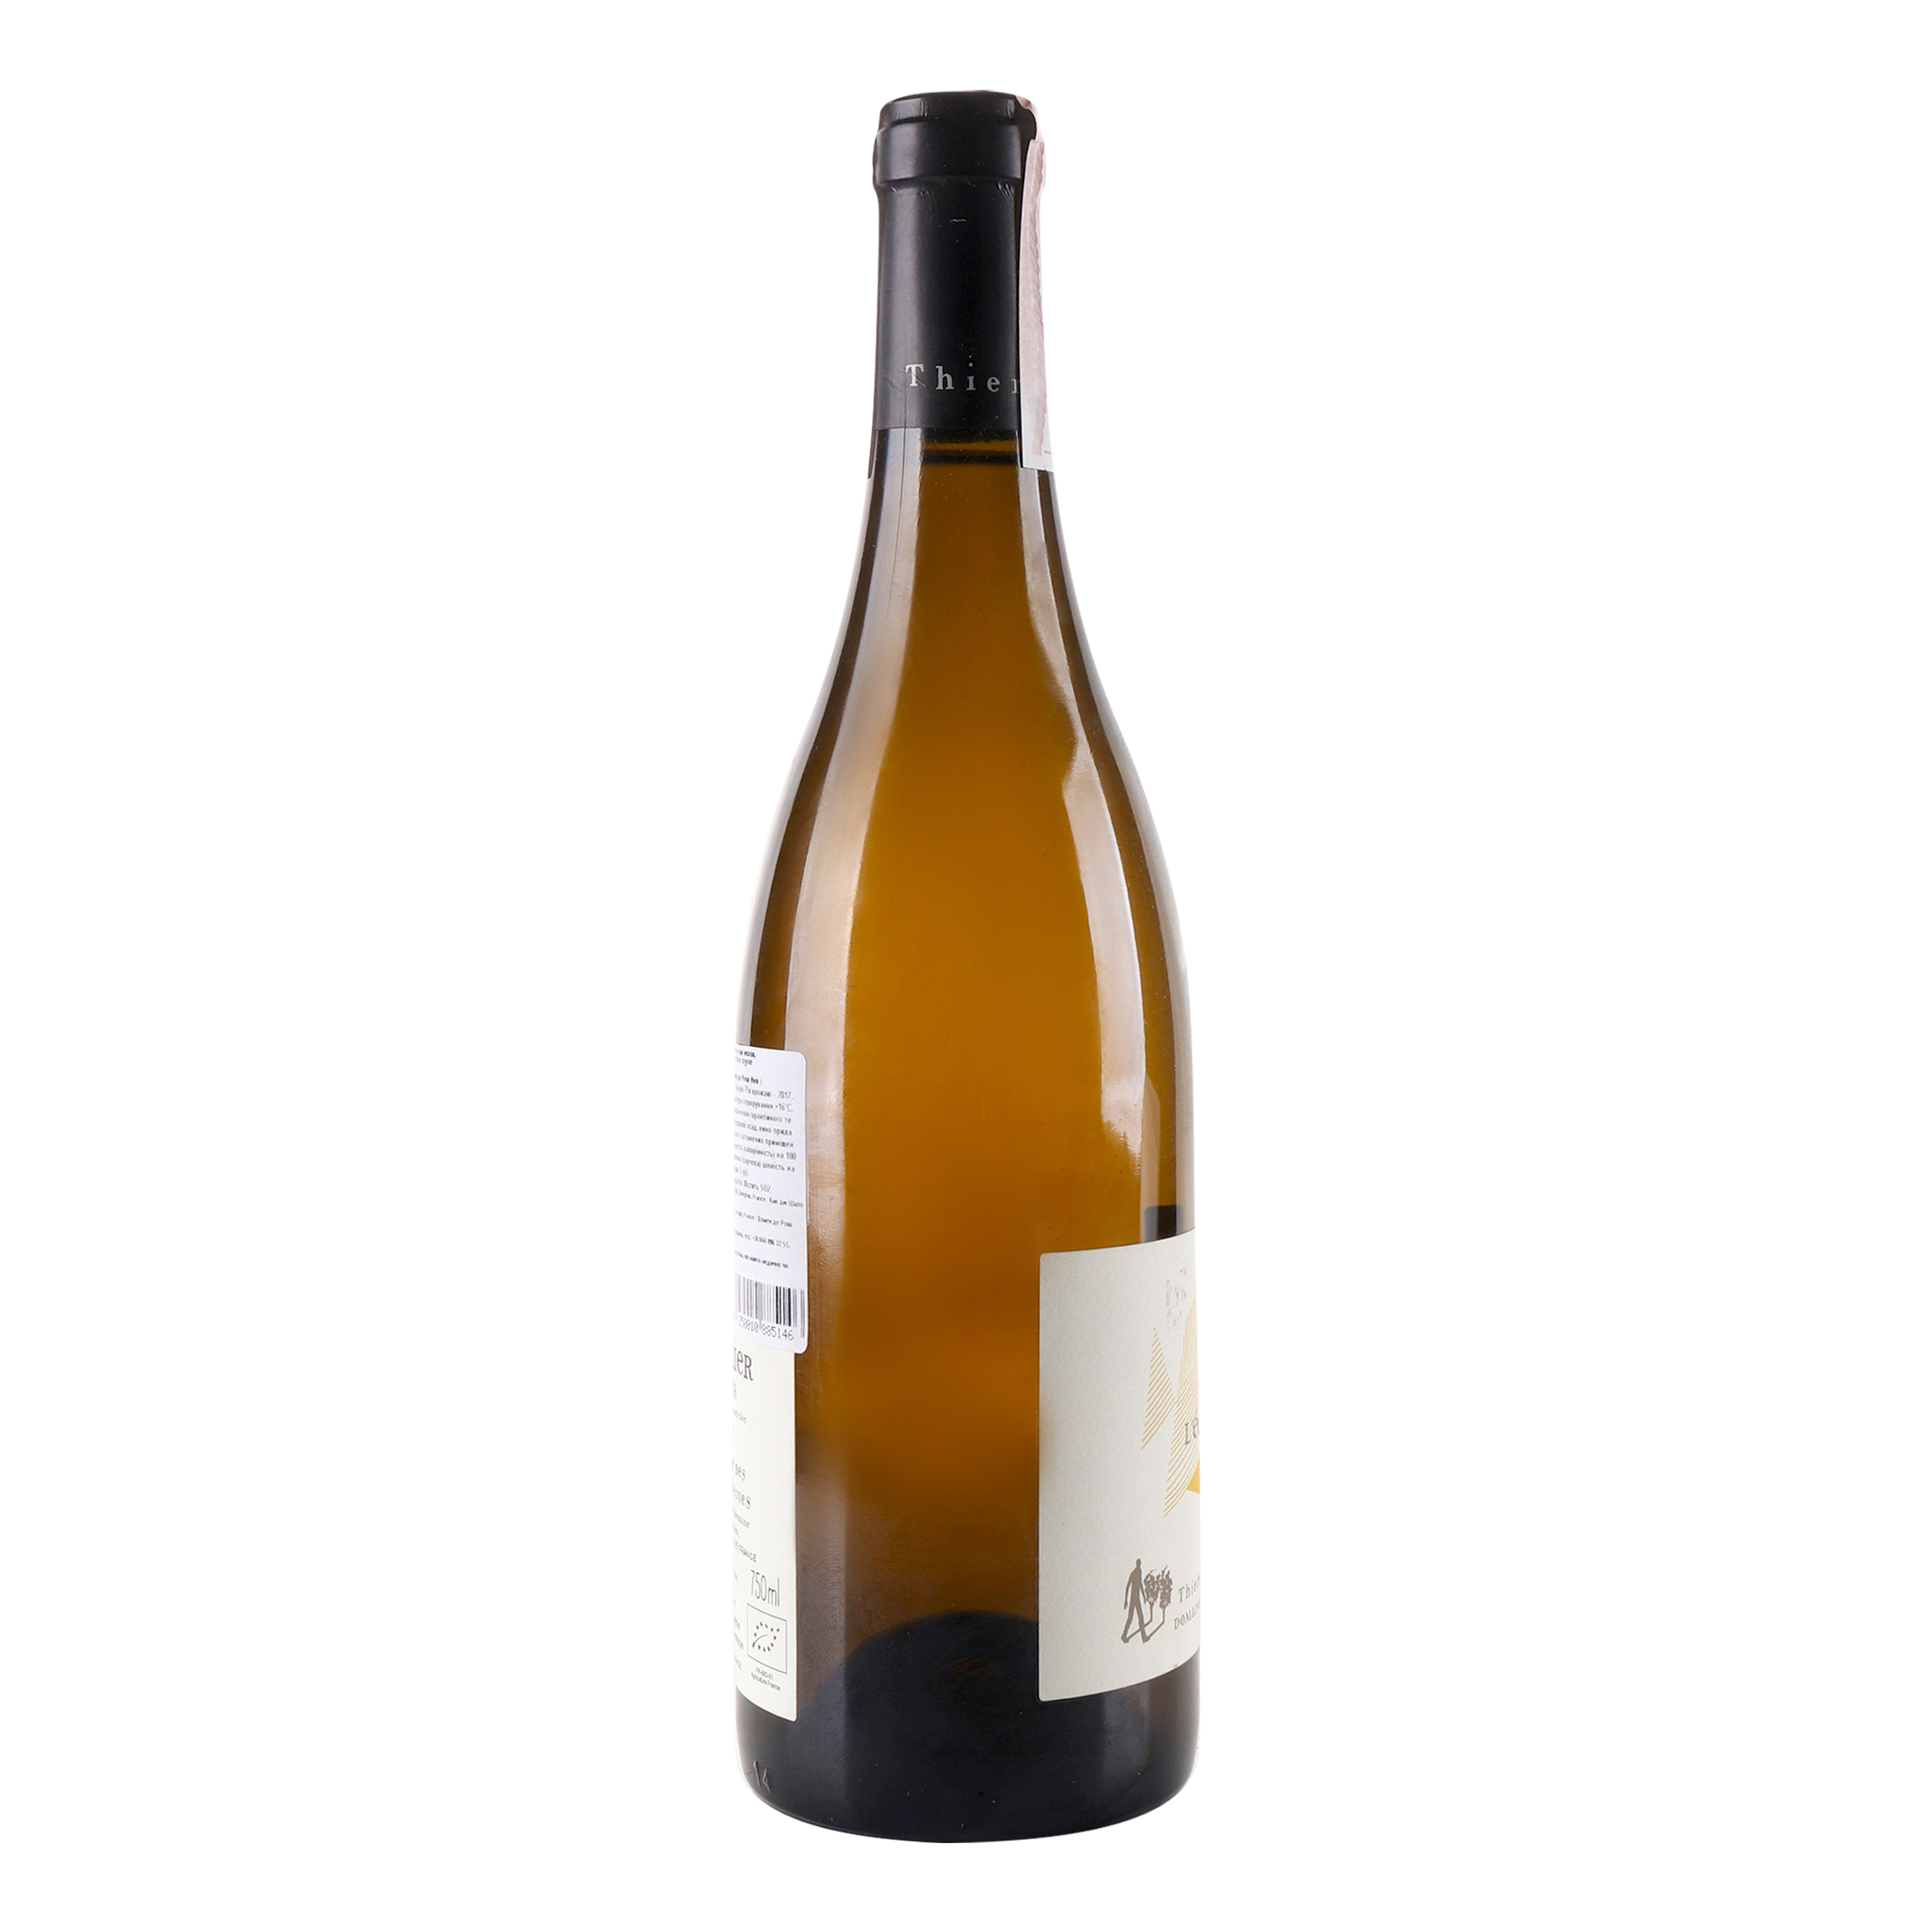 Вино Thierry Germain Domaine de Roches Neuves Saumur L’Echelier 2017 АОС/AOP, 13%, 0,75 л (766677) - фото 4